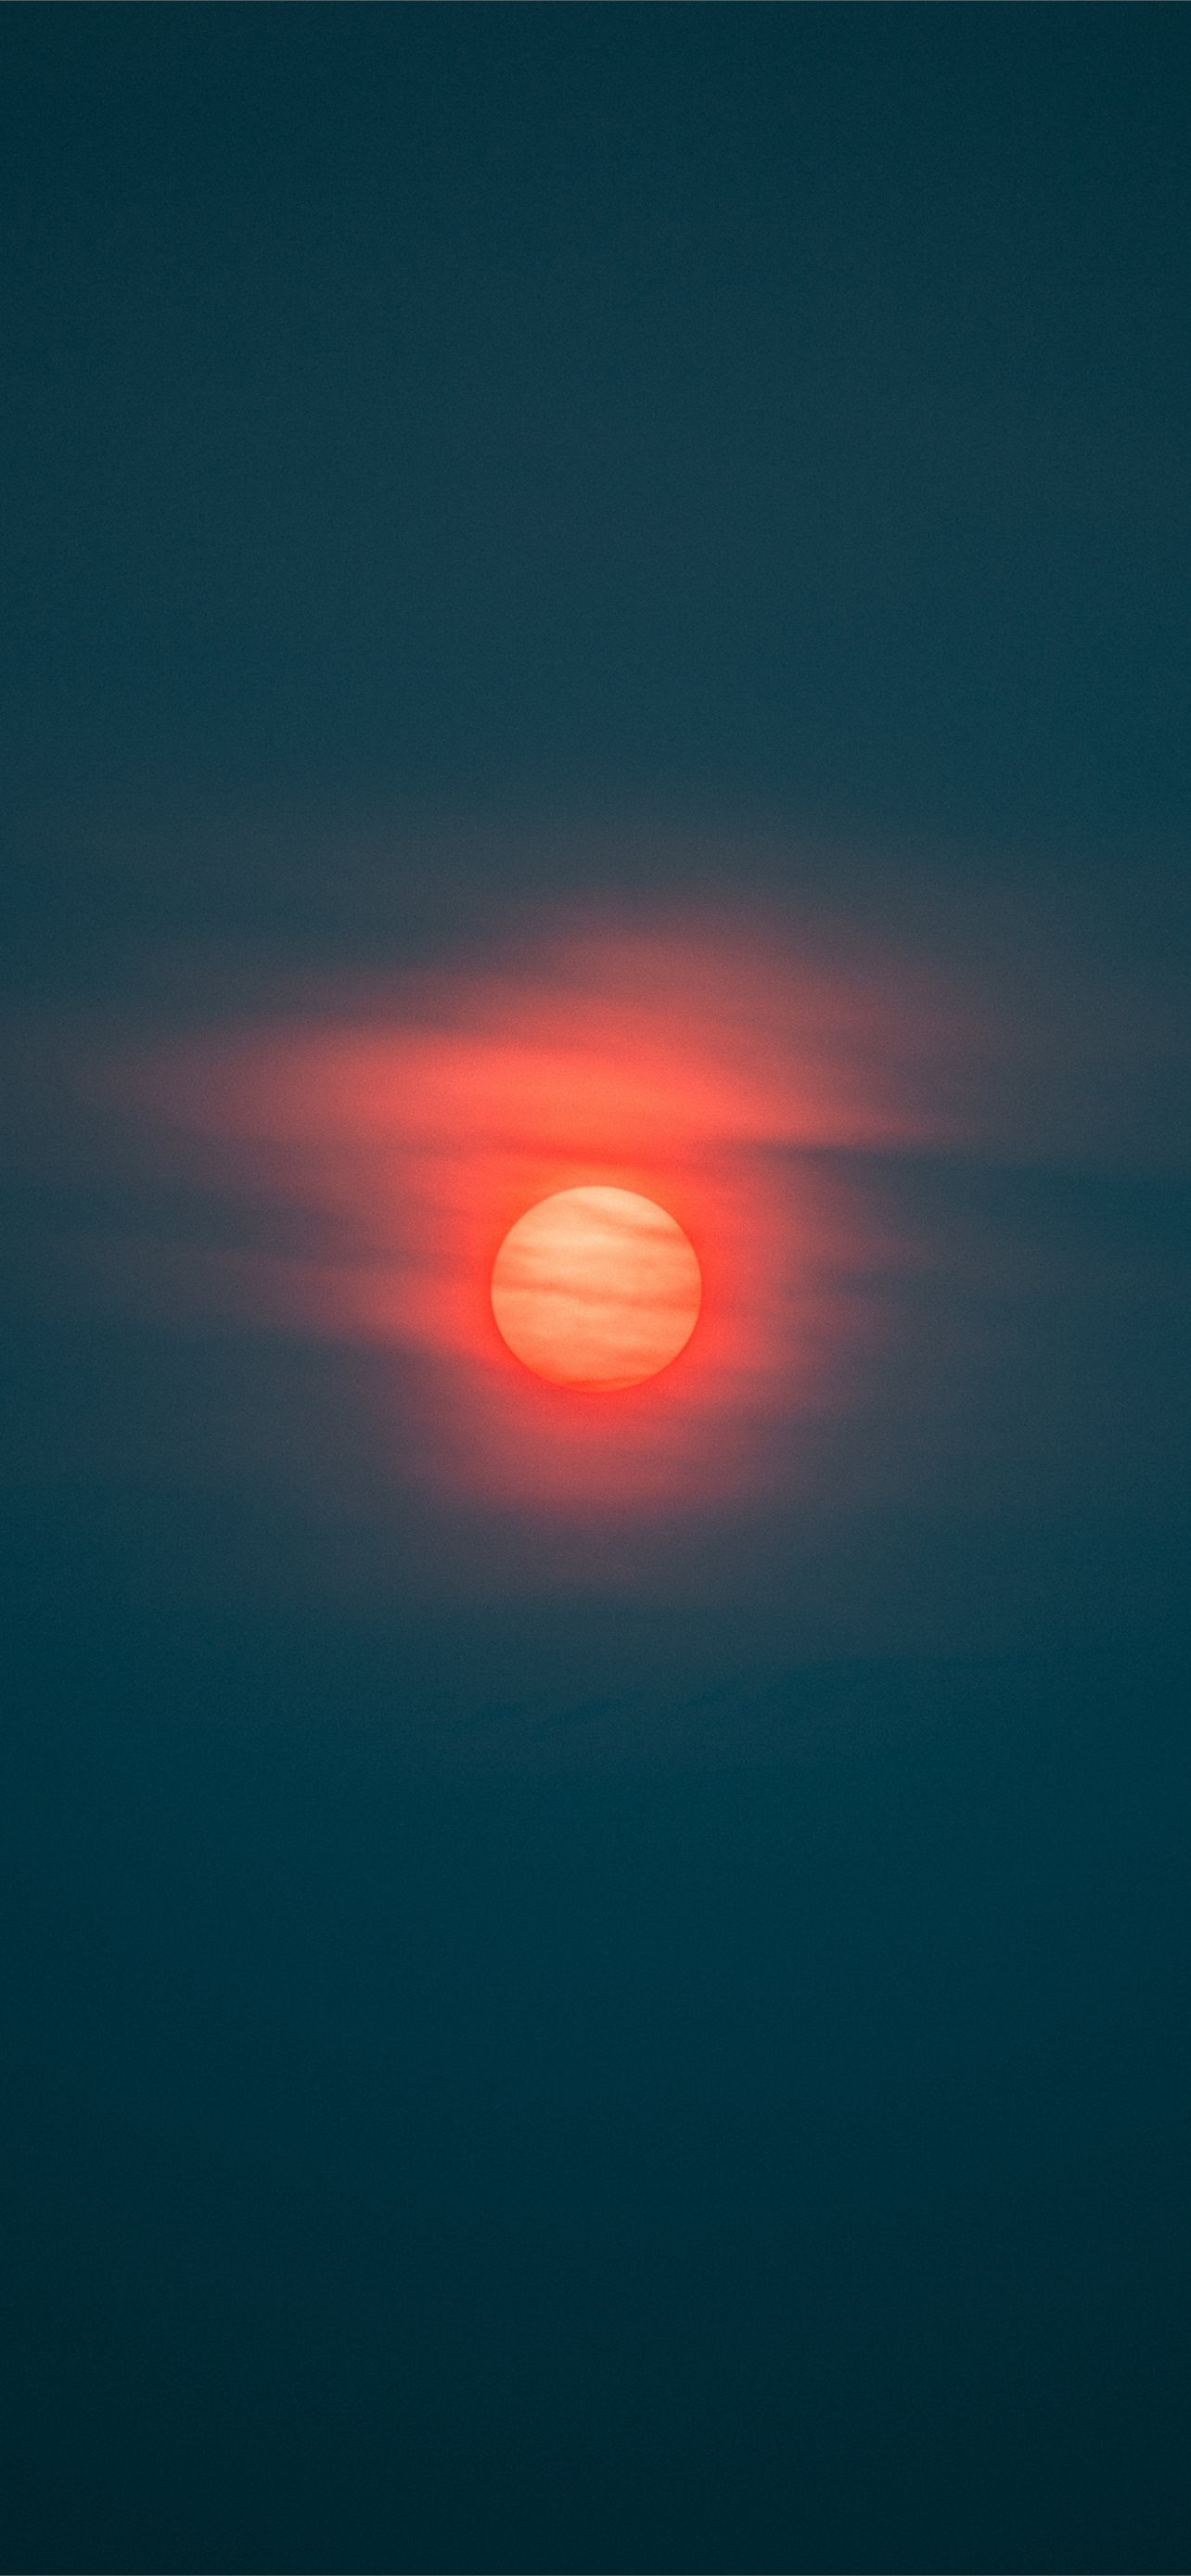 Sunset Red Sun iPhone Wallpaper